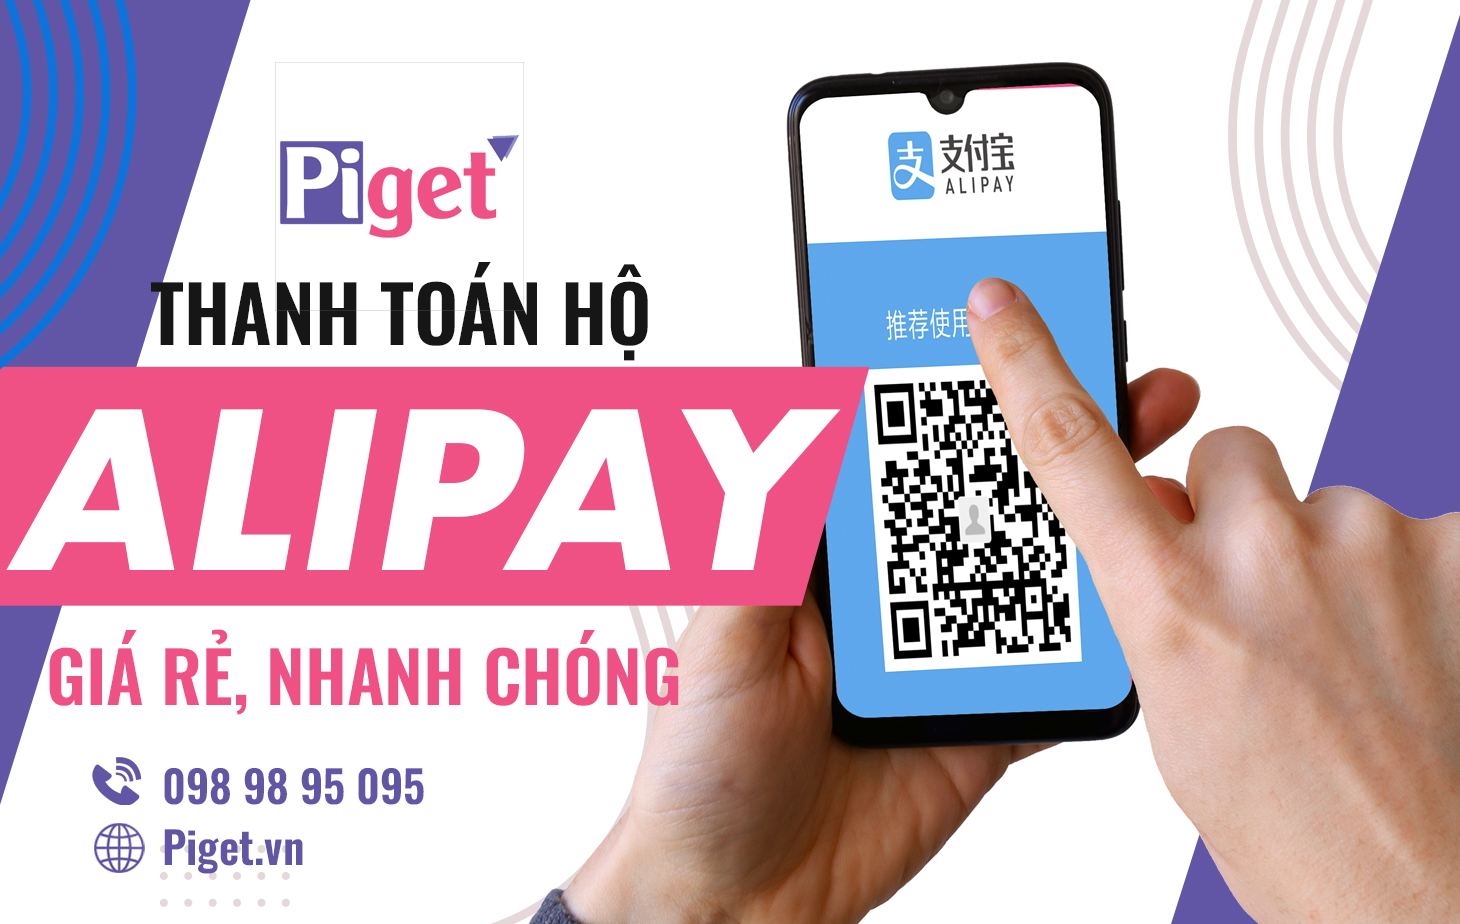 Dịch vụ nạp tiền, thanh toán hộ Alipay tại Piget